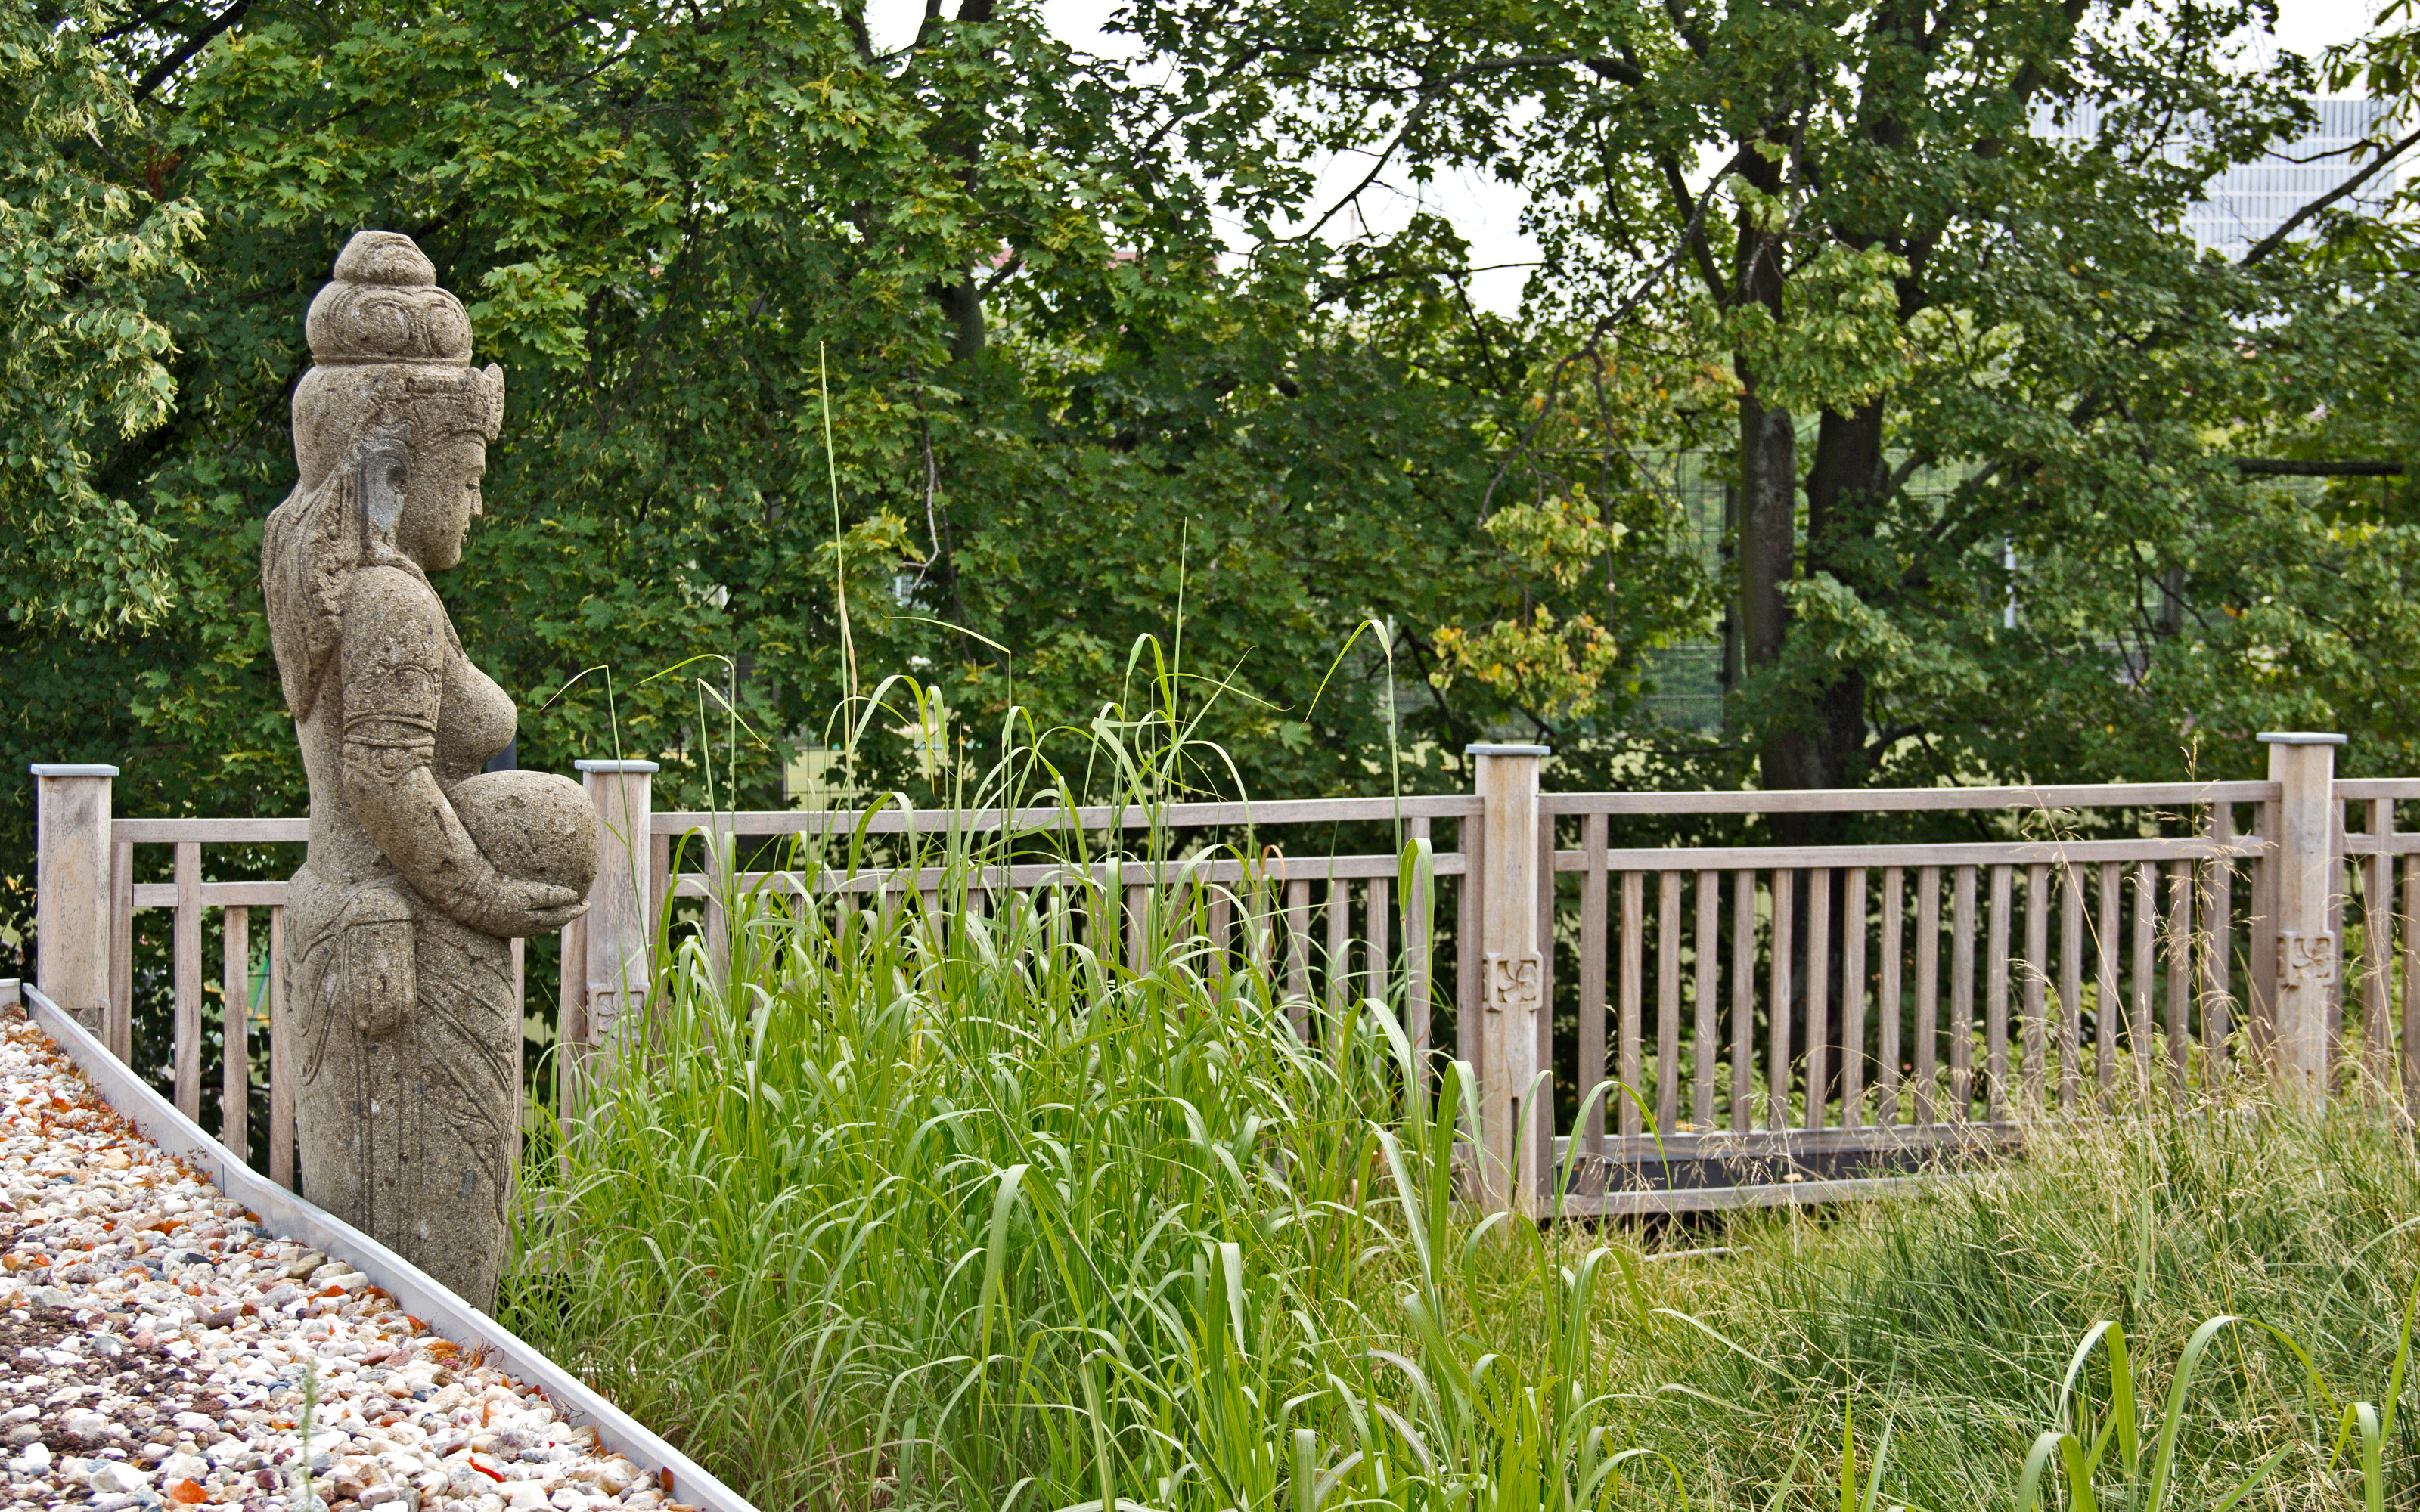 Buddha-Figur vor Gräsern auf einem Dach